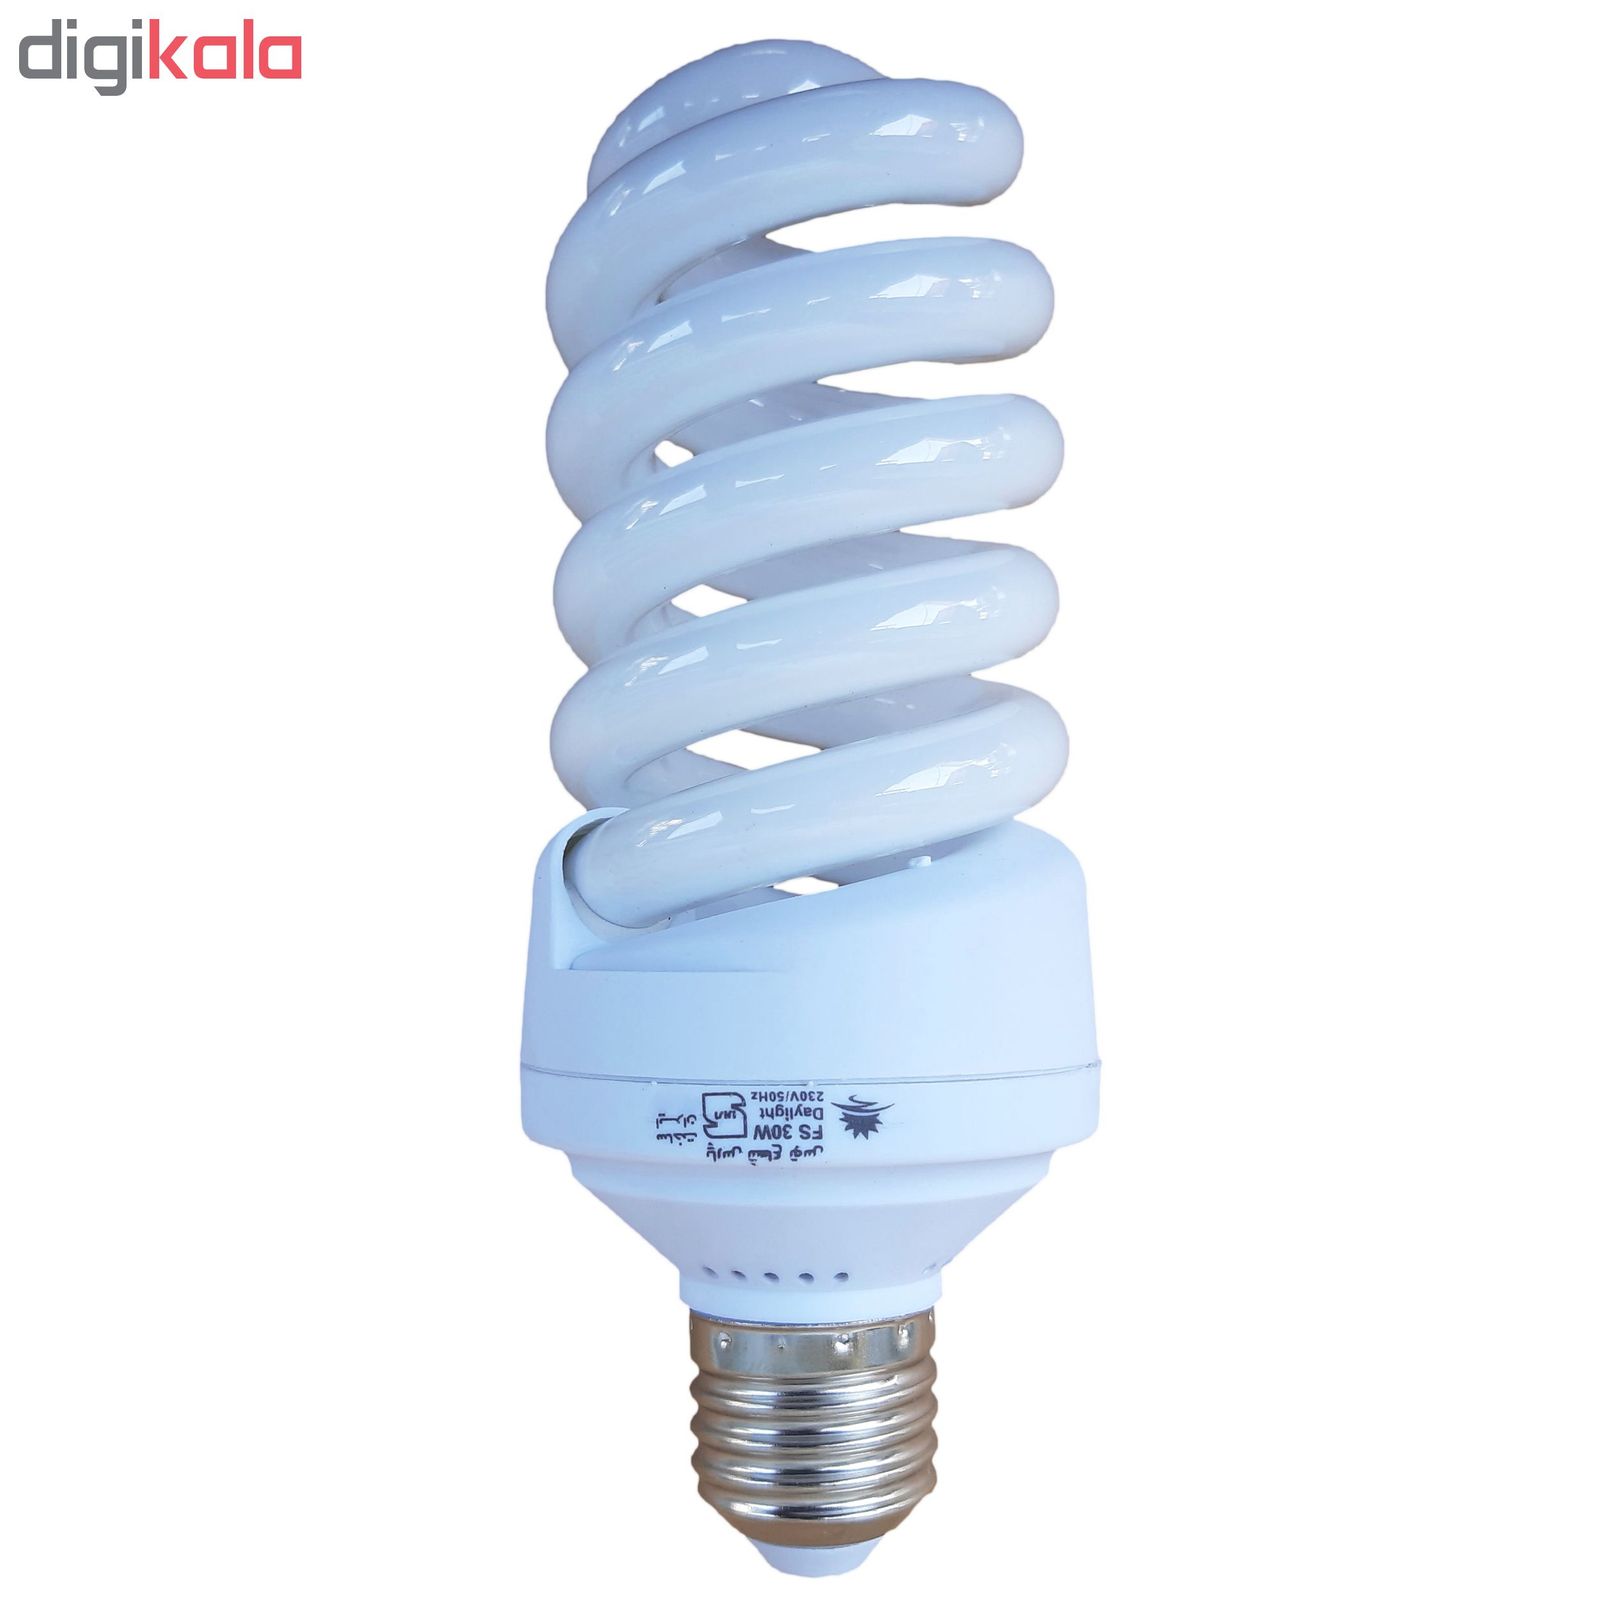  لامپ کم مصرف 30 وات پارس شعاع توس مدل FULL SPIRAL پایه E27 